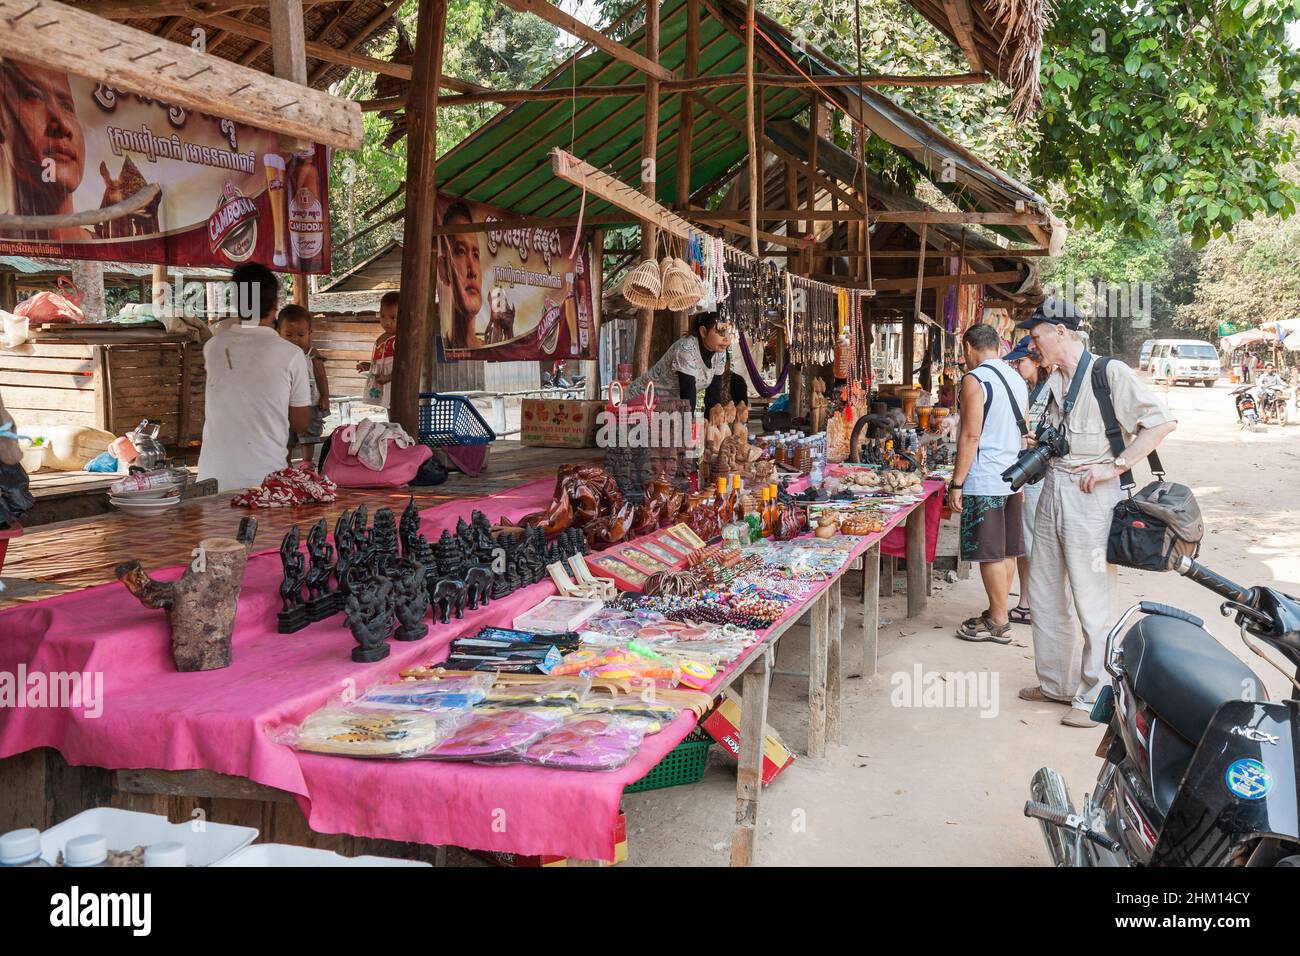 Phnom Kulen, Cambodge - février 2013 : les touristes choisissent des cadeaux et des souvenirs dans un marché de rue près des attractions locales du parc national de Phnom Kulen Banque D'Images